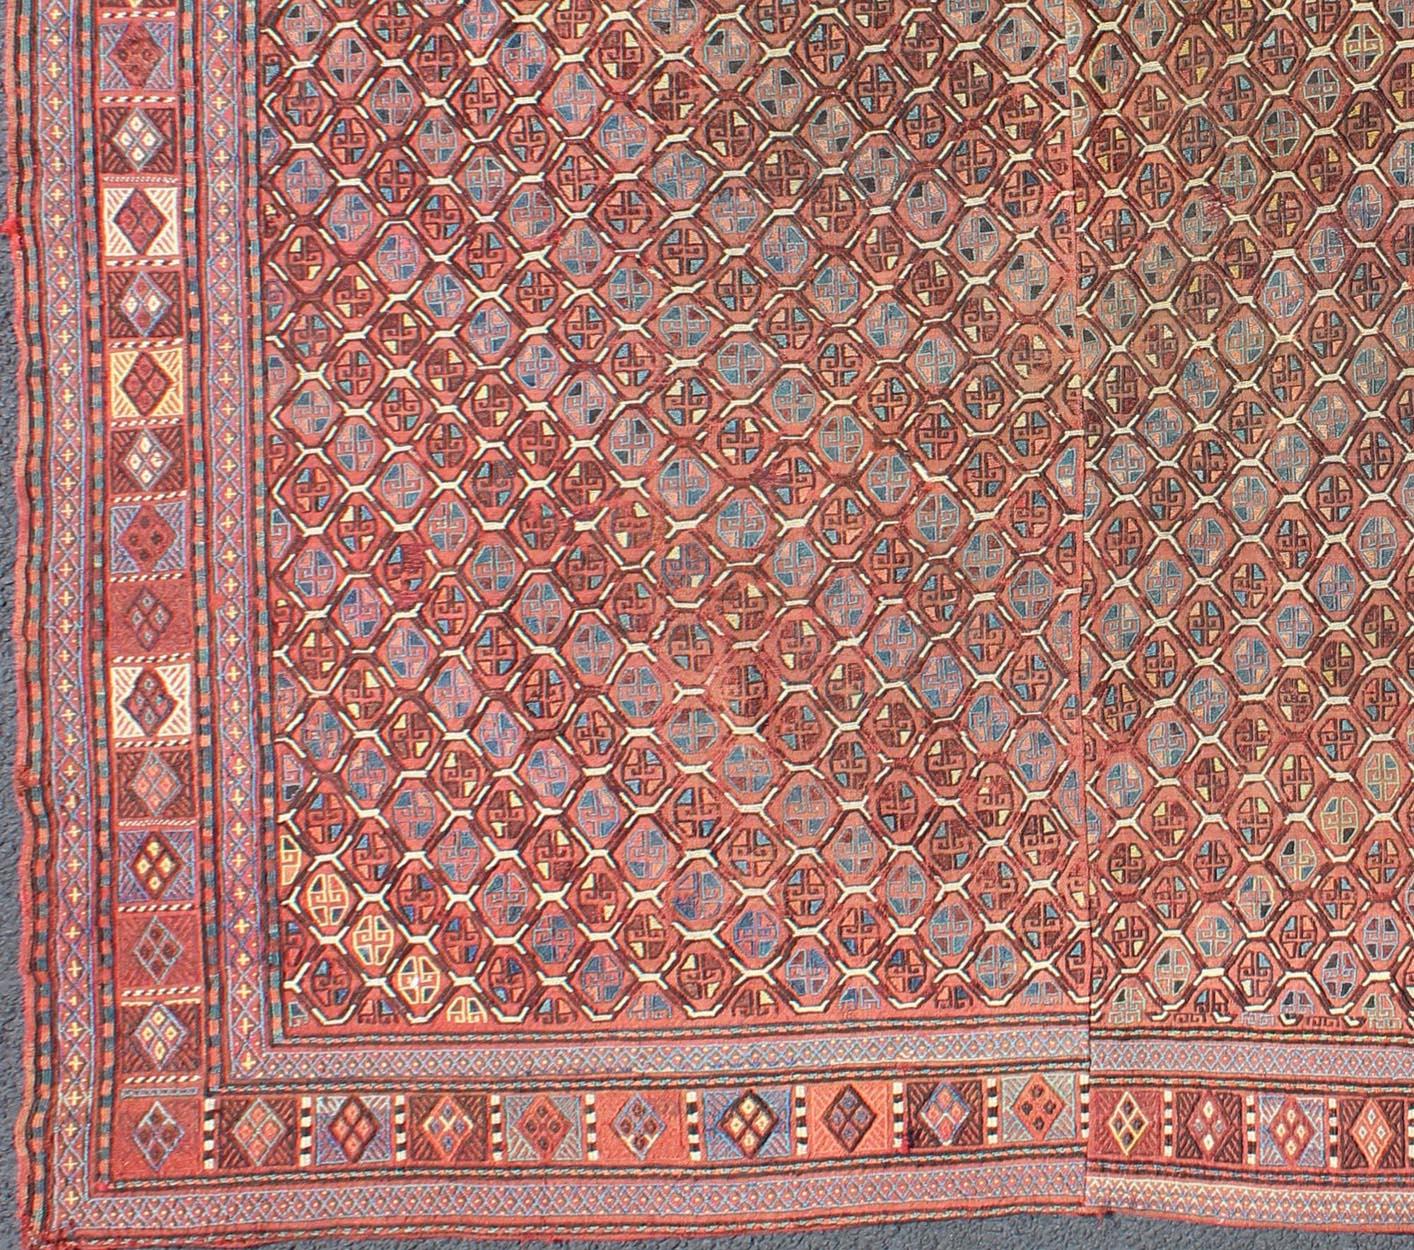 Tapis ancien Verneh du Caucase avec des motifs géométriques en rouge doux, bleu, vert, ivoire et multicolores, tapis 11-90108, pays d'origine / type : Caucase / Verneh, vers 1900.

Ce tapis caucasien ancien au design moderne présente un motif